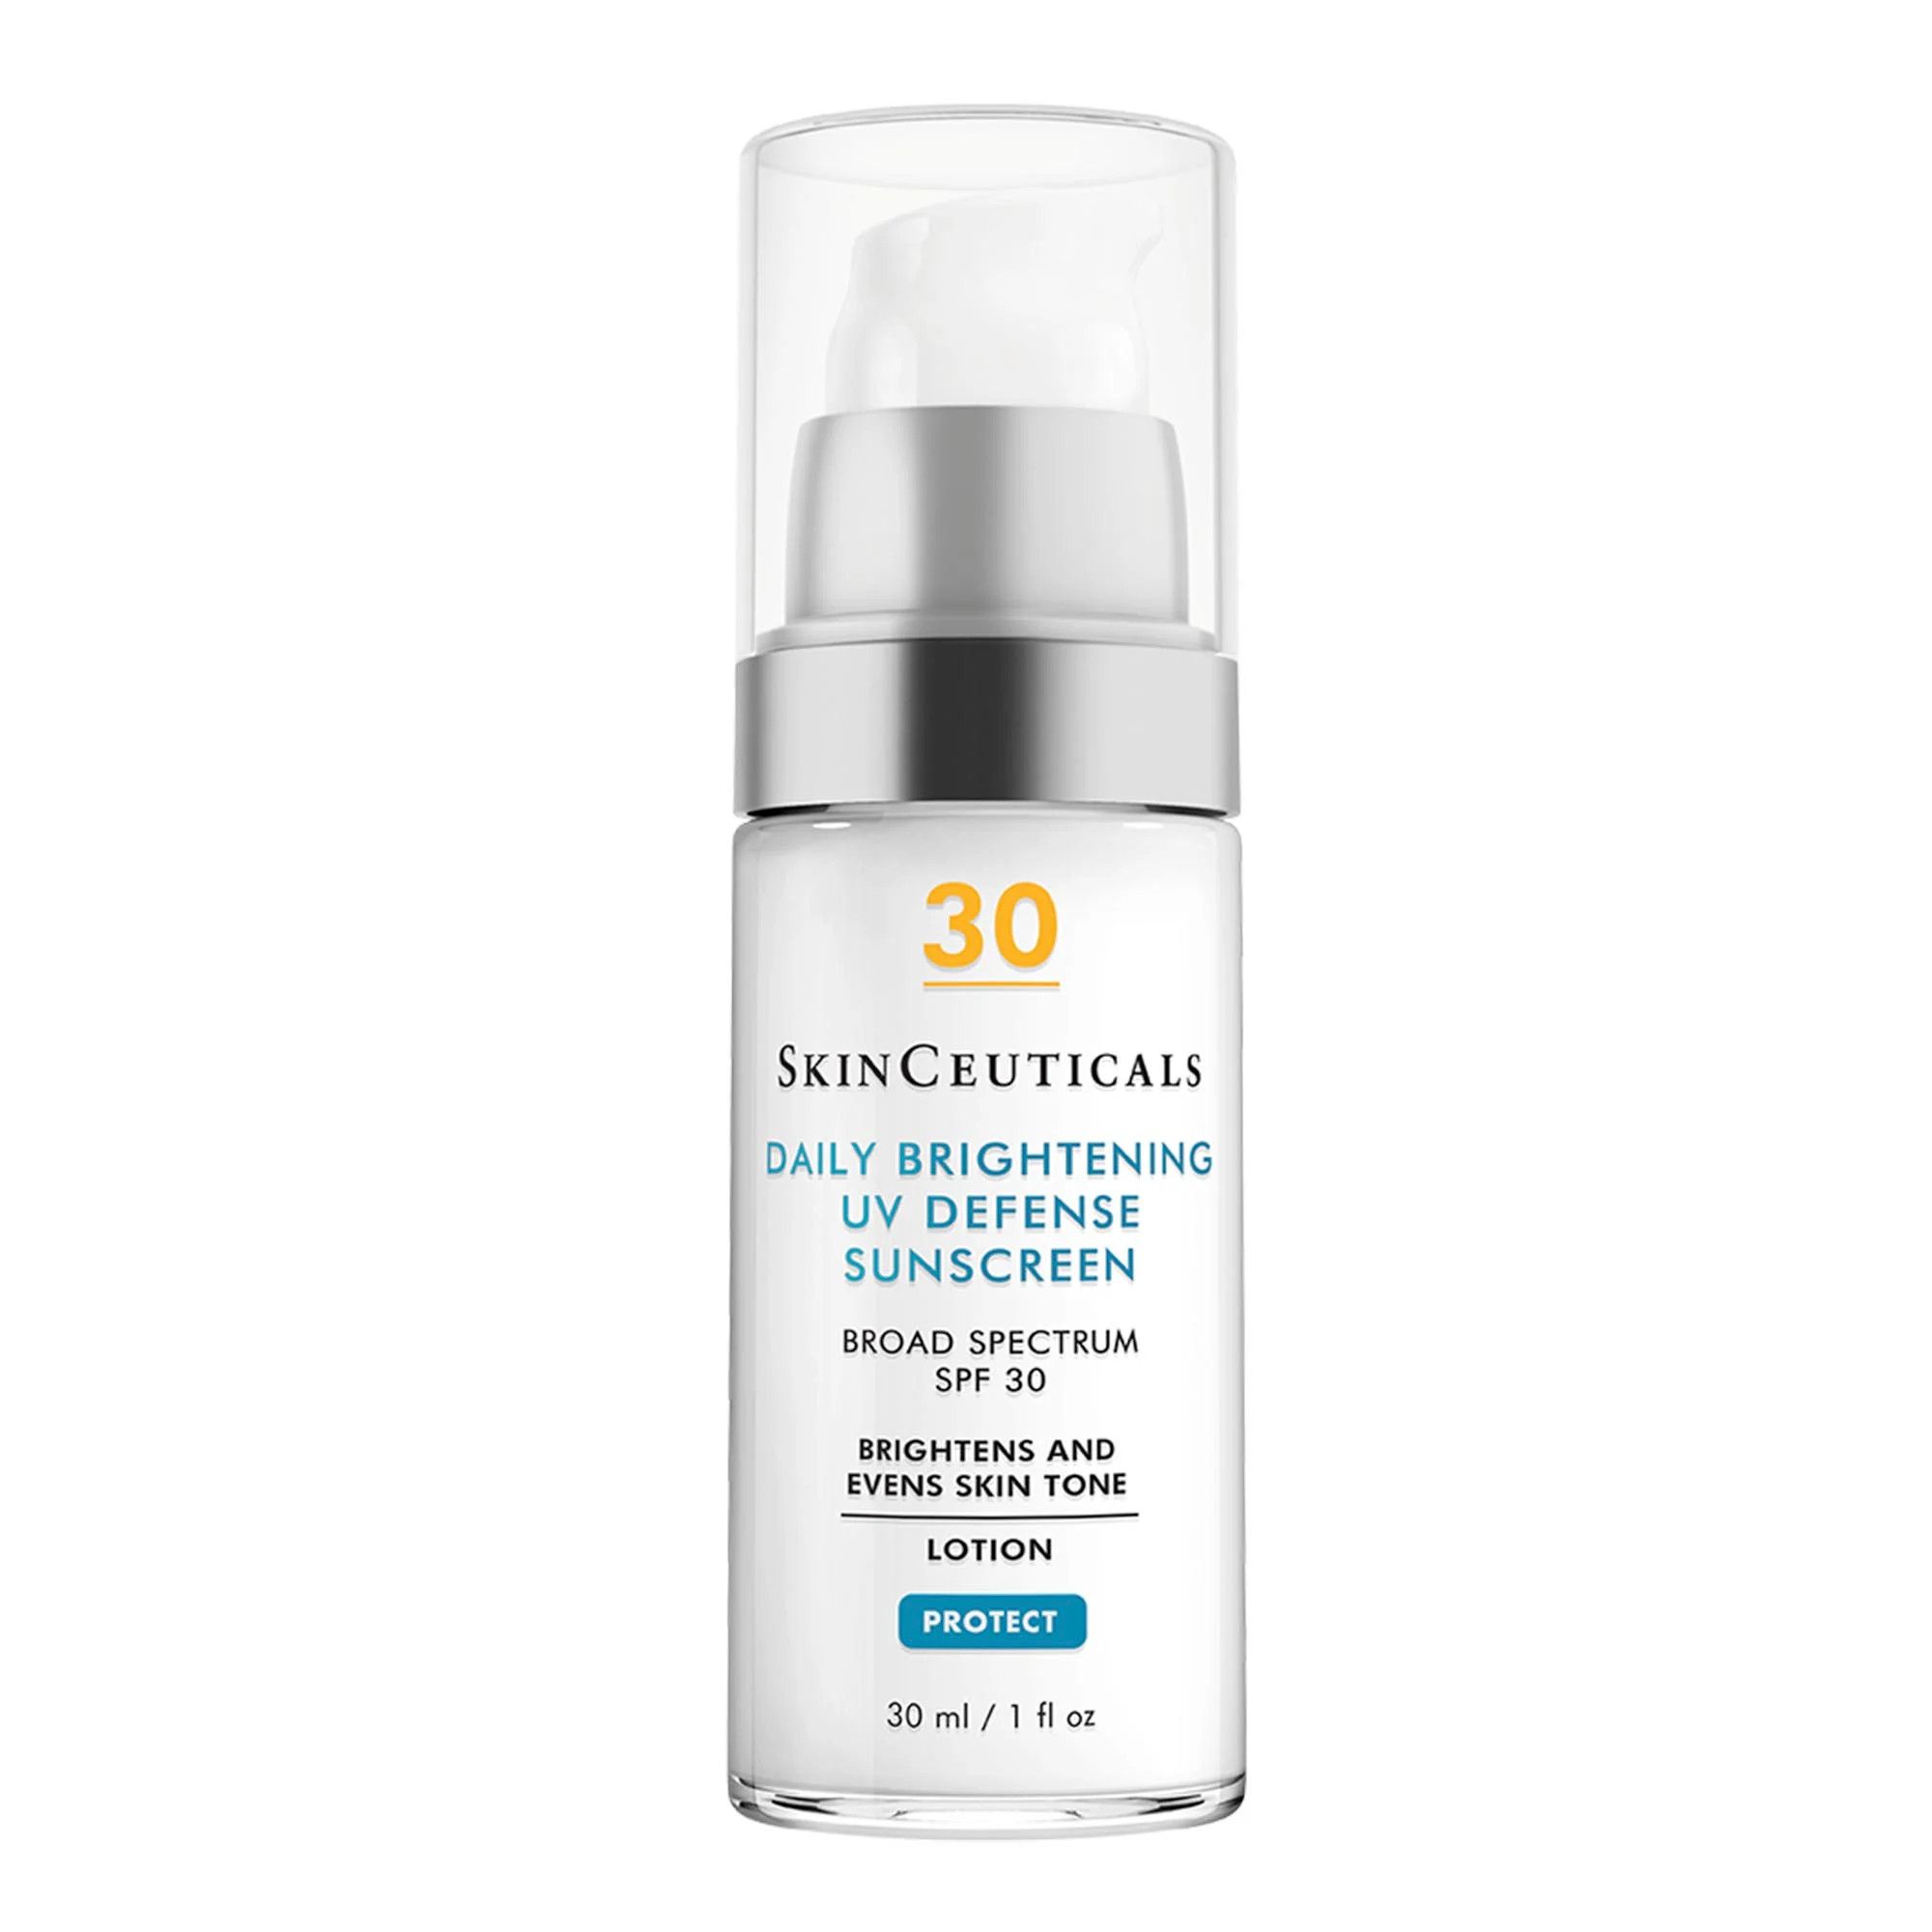 Daily Brightening UV Defense Sunscreen SPF 30 | Sunscreen | SkinCeuticals | SkinCeuticals